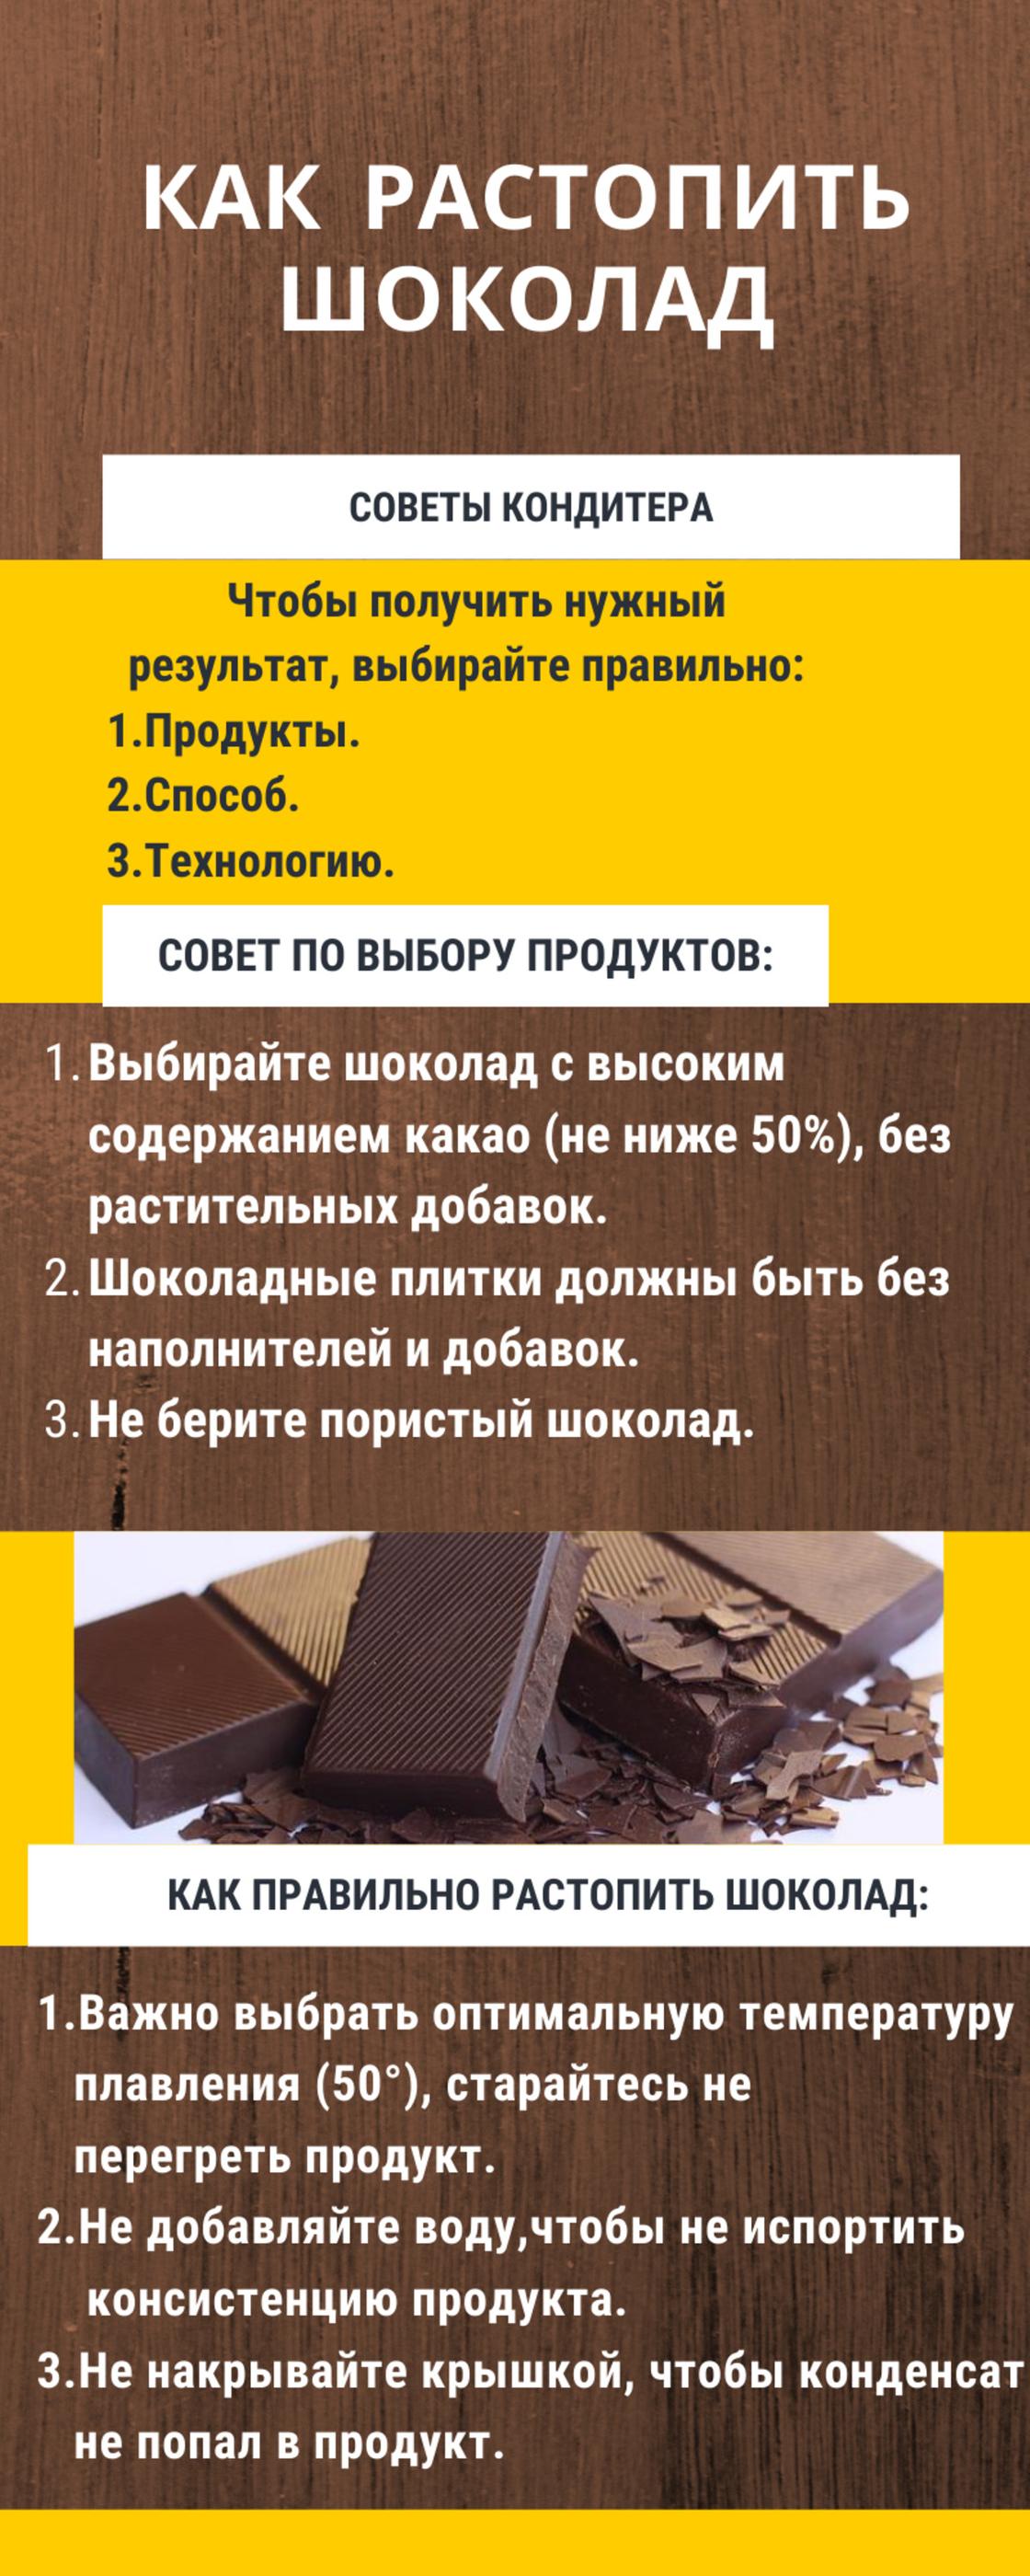 Инфографика. Как растопить шоколад